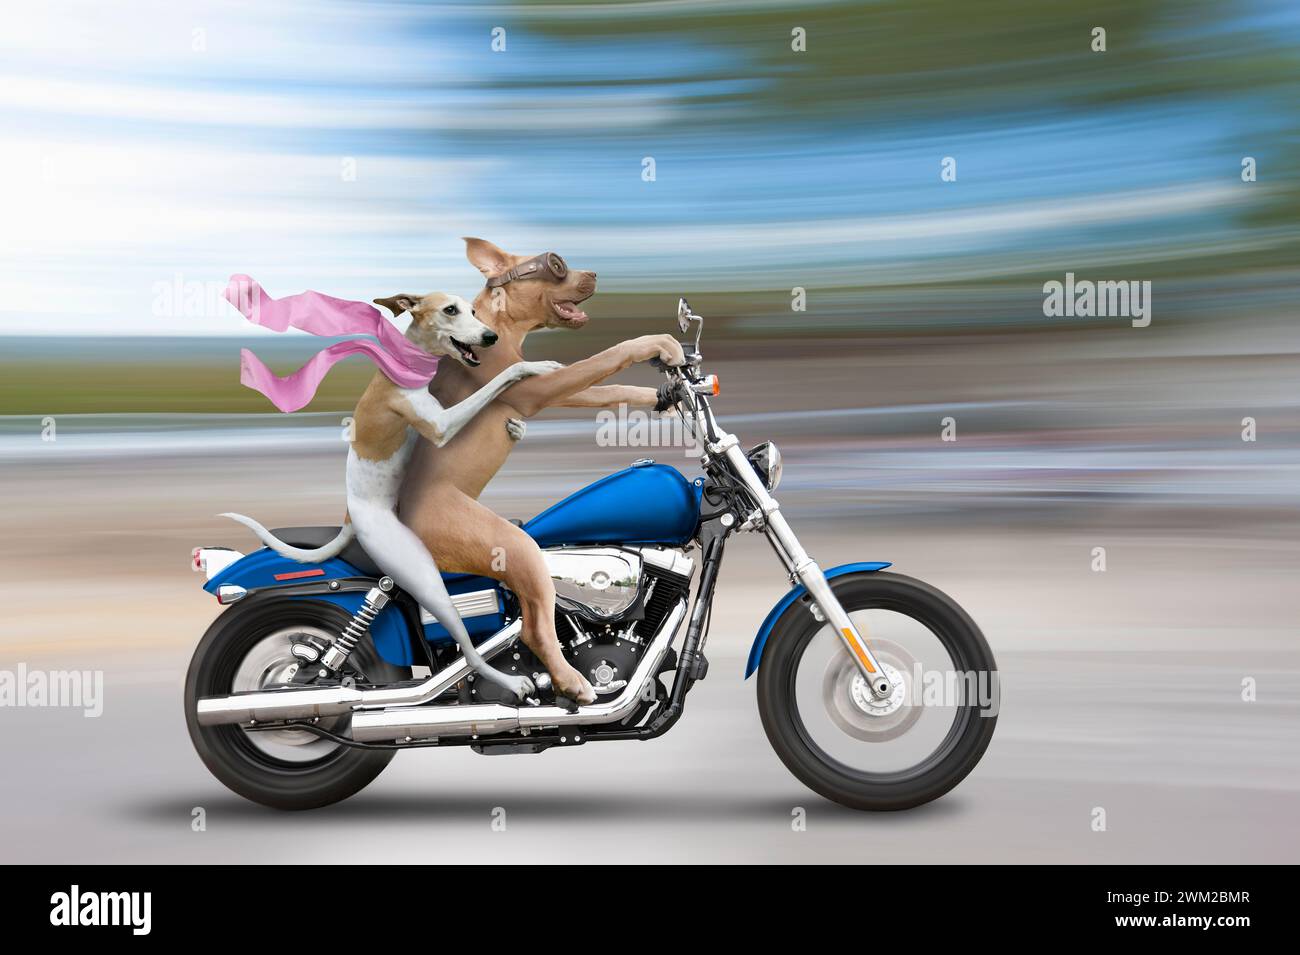 Liberté et joie sont deux des concepts illustrés par cette drôle d’image de deux chiens, un pit Bull et un fouet, conduisant une moto Harley Davidson. Banque D'Images